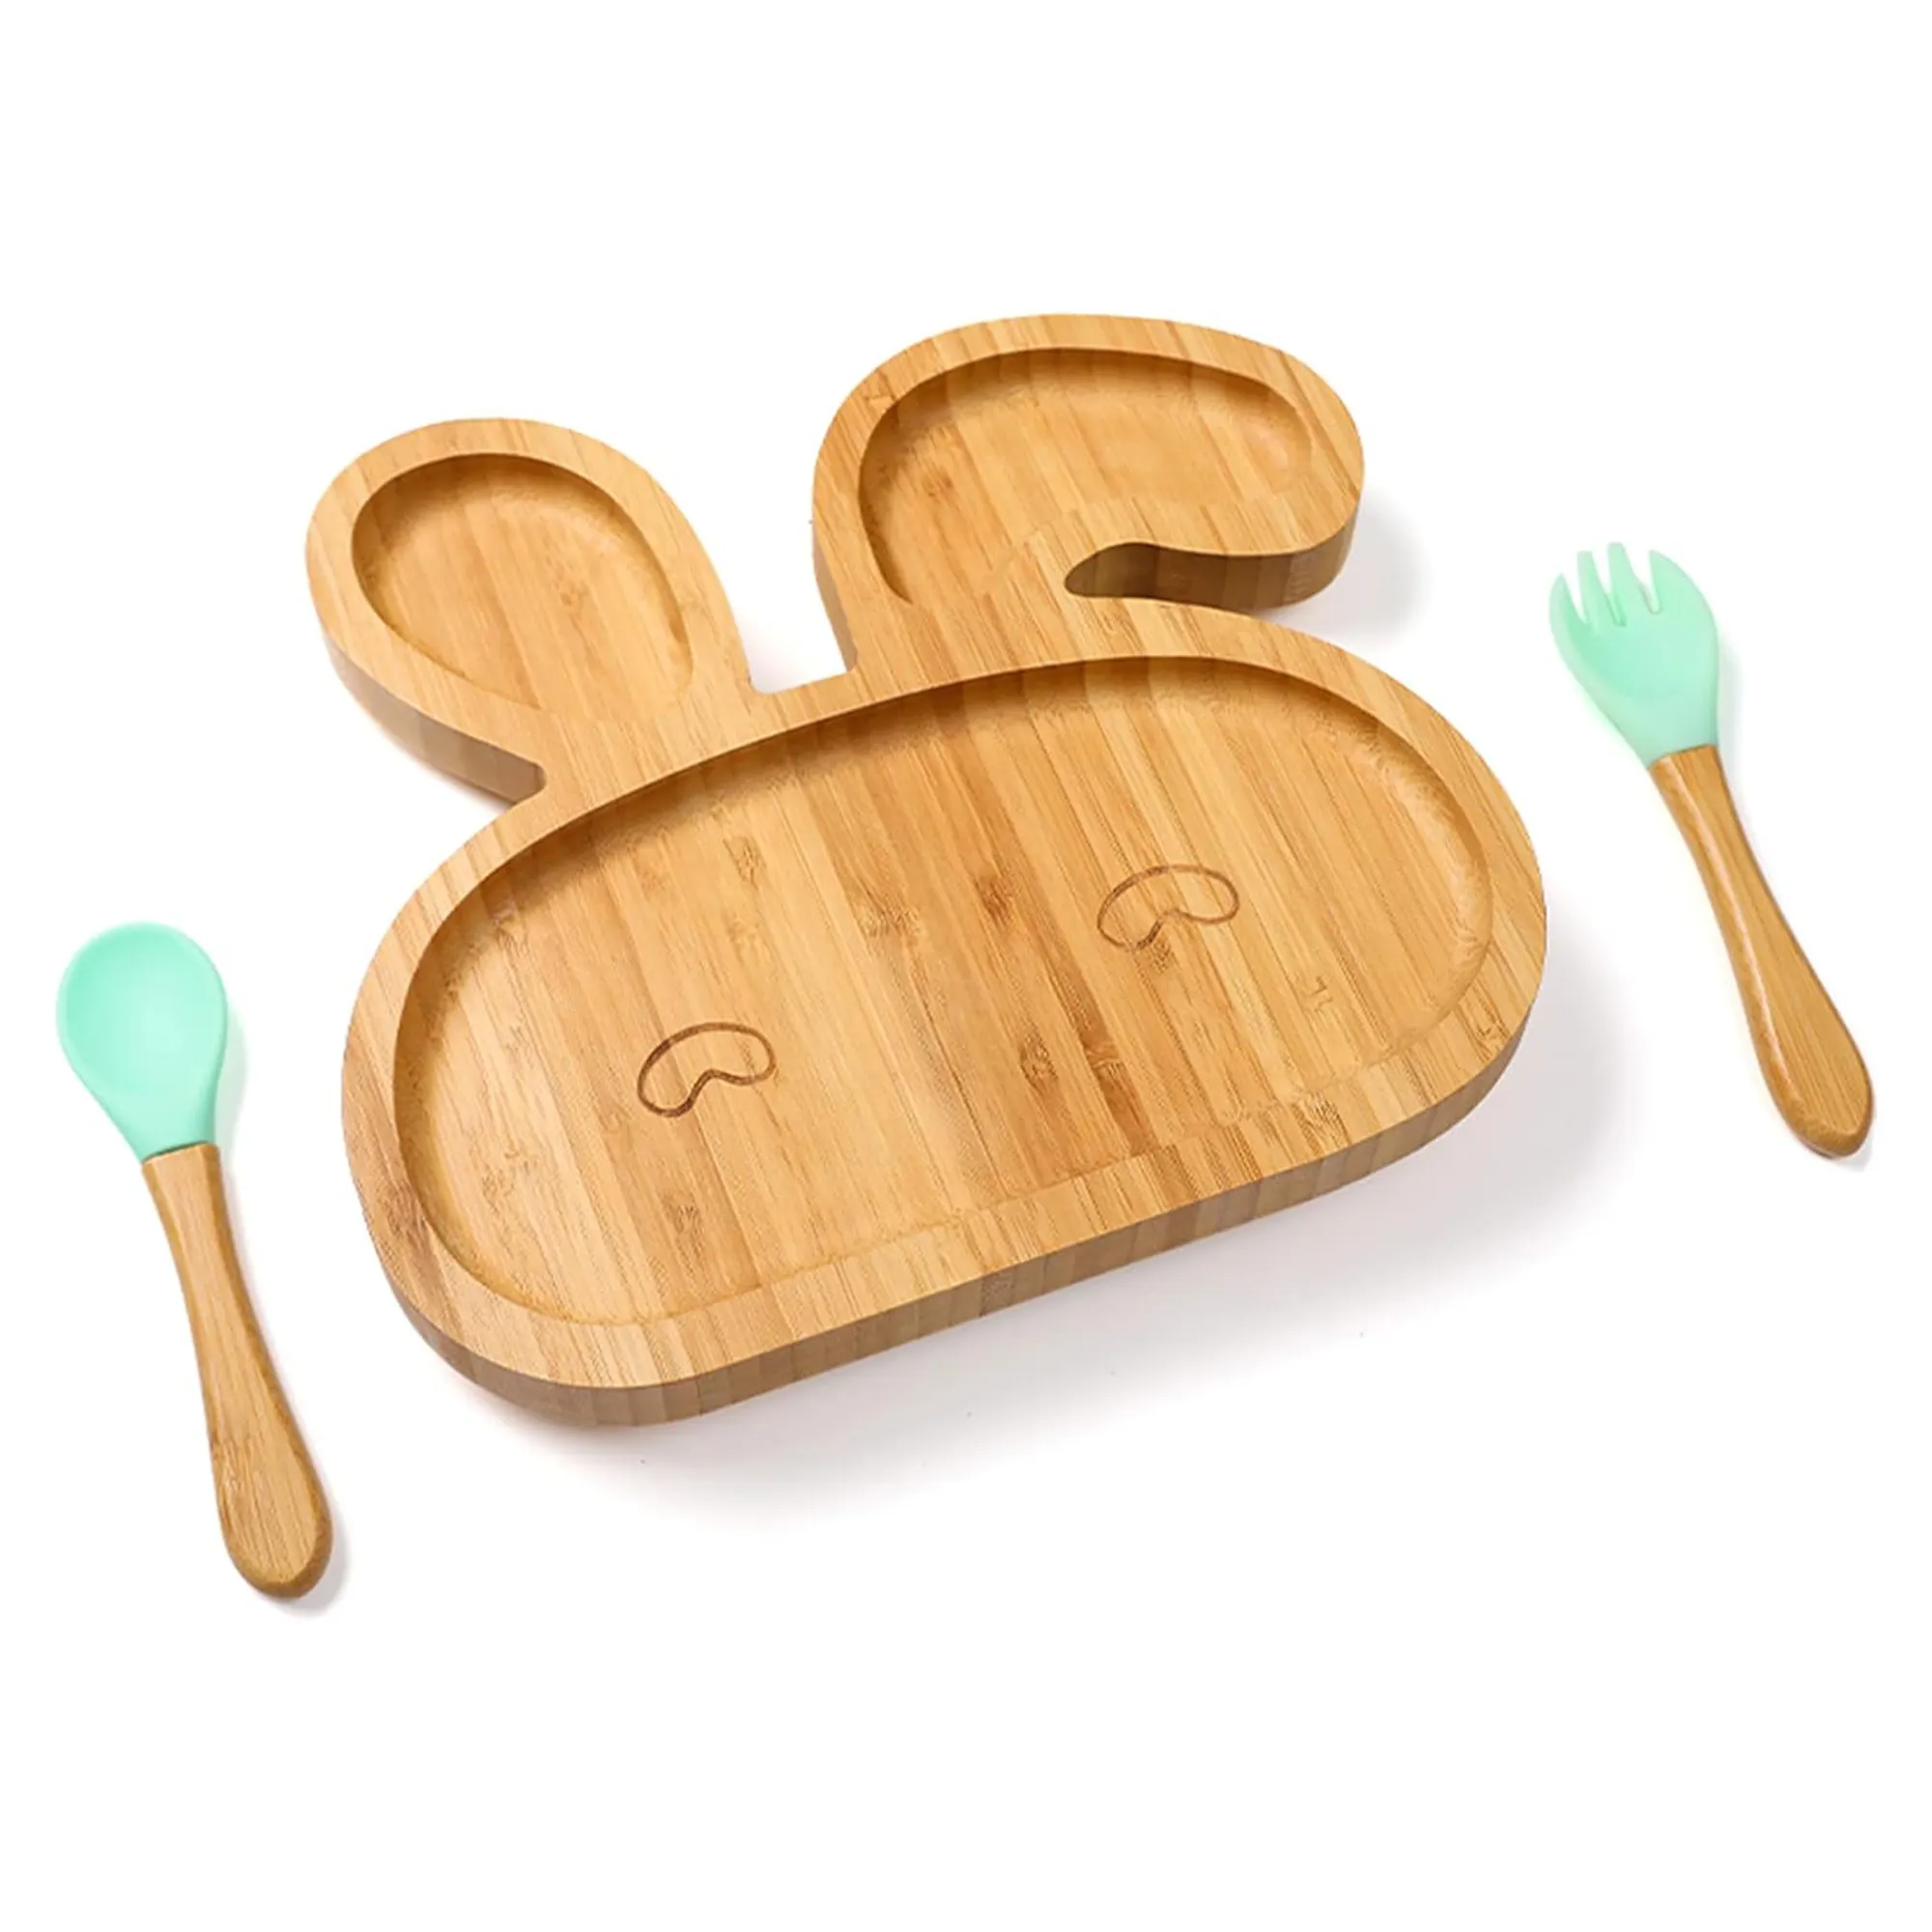 Marka yeni tasarım aile yemeği sevimli tavşan şekilli bambu bölünmüş yemekleri ahşap mutfak için çocuk tabağı bambu ahşap plakalar